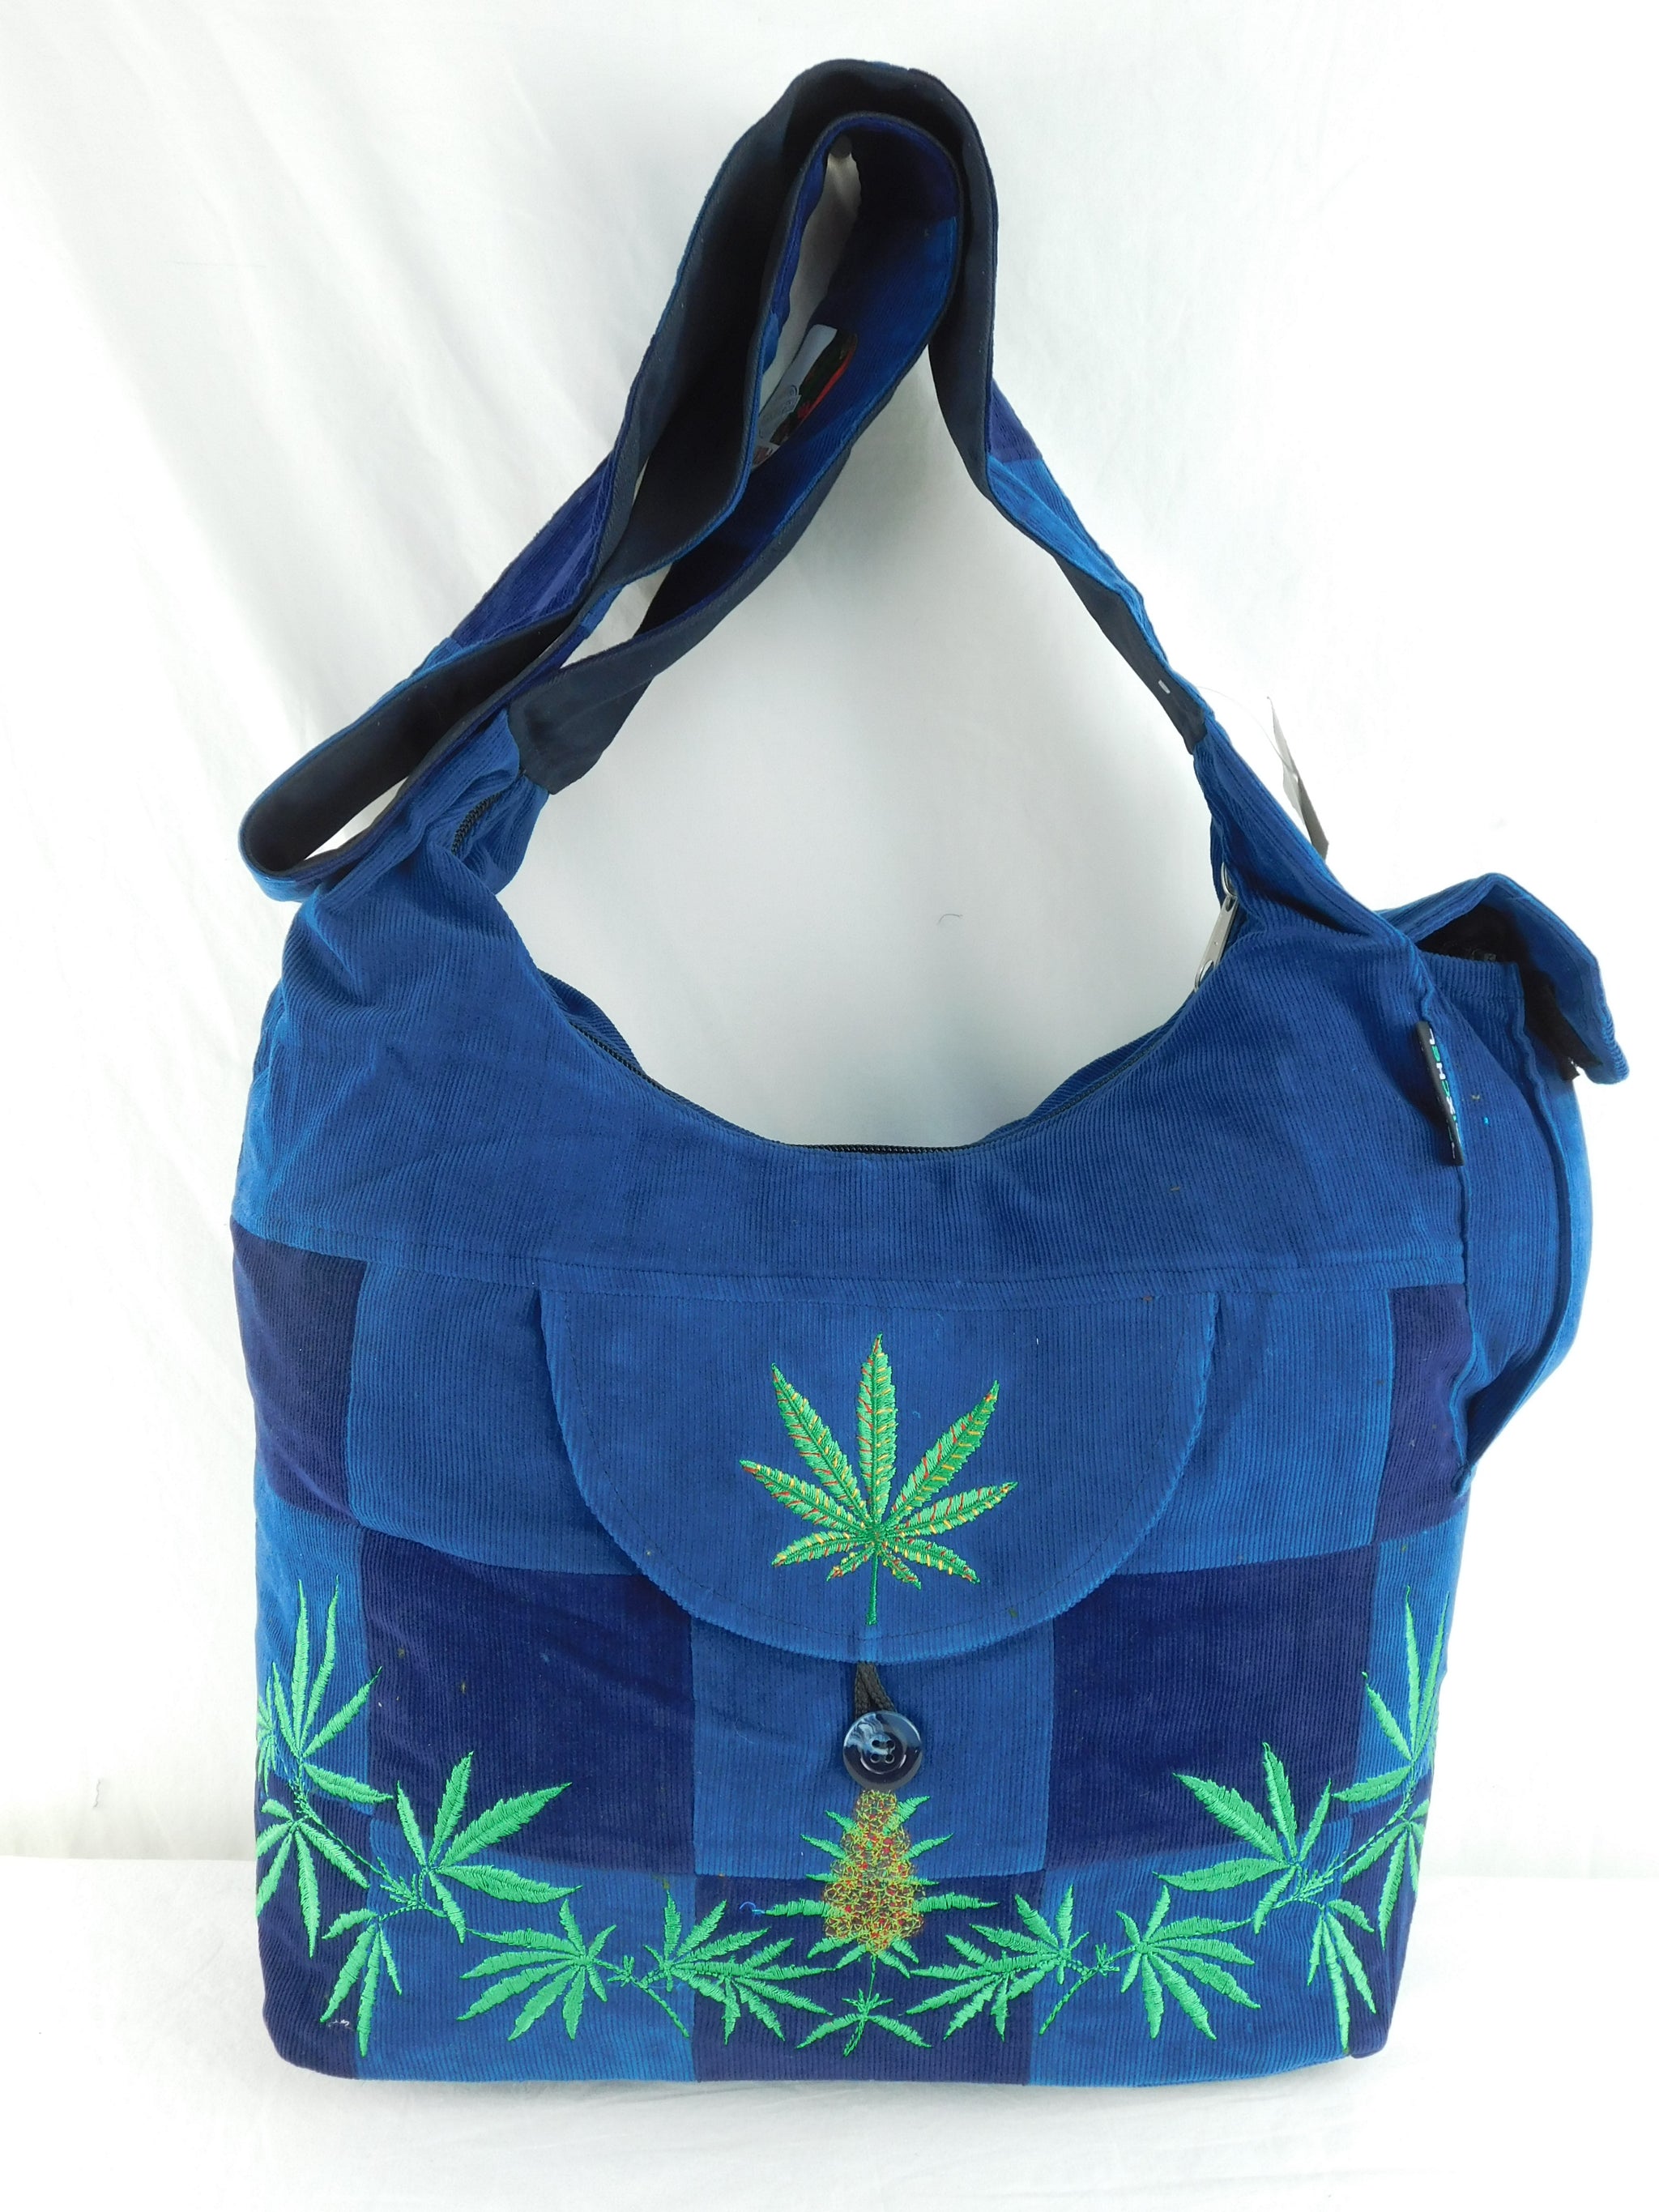 Patchwork Saddle Bag with Ganja leaf Embroidery